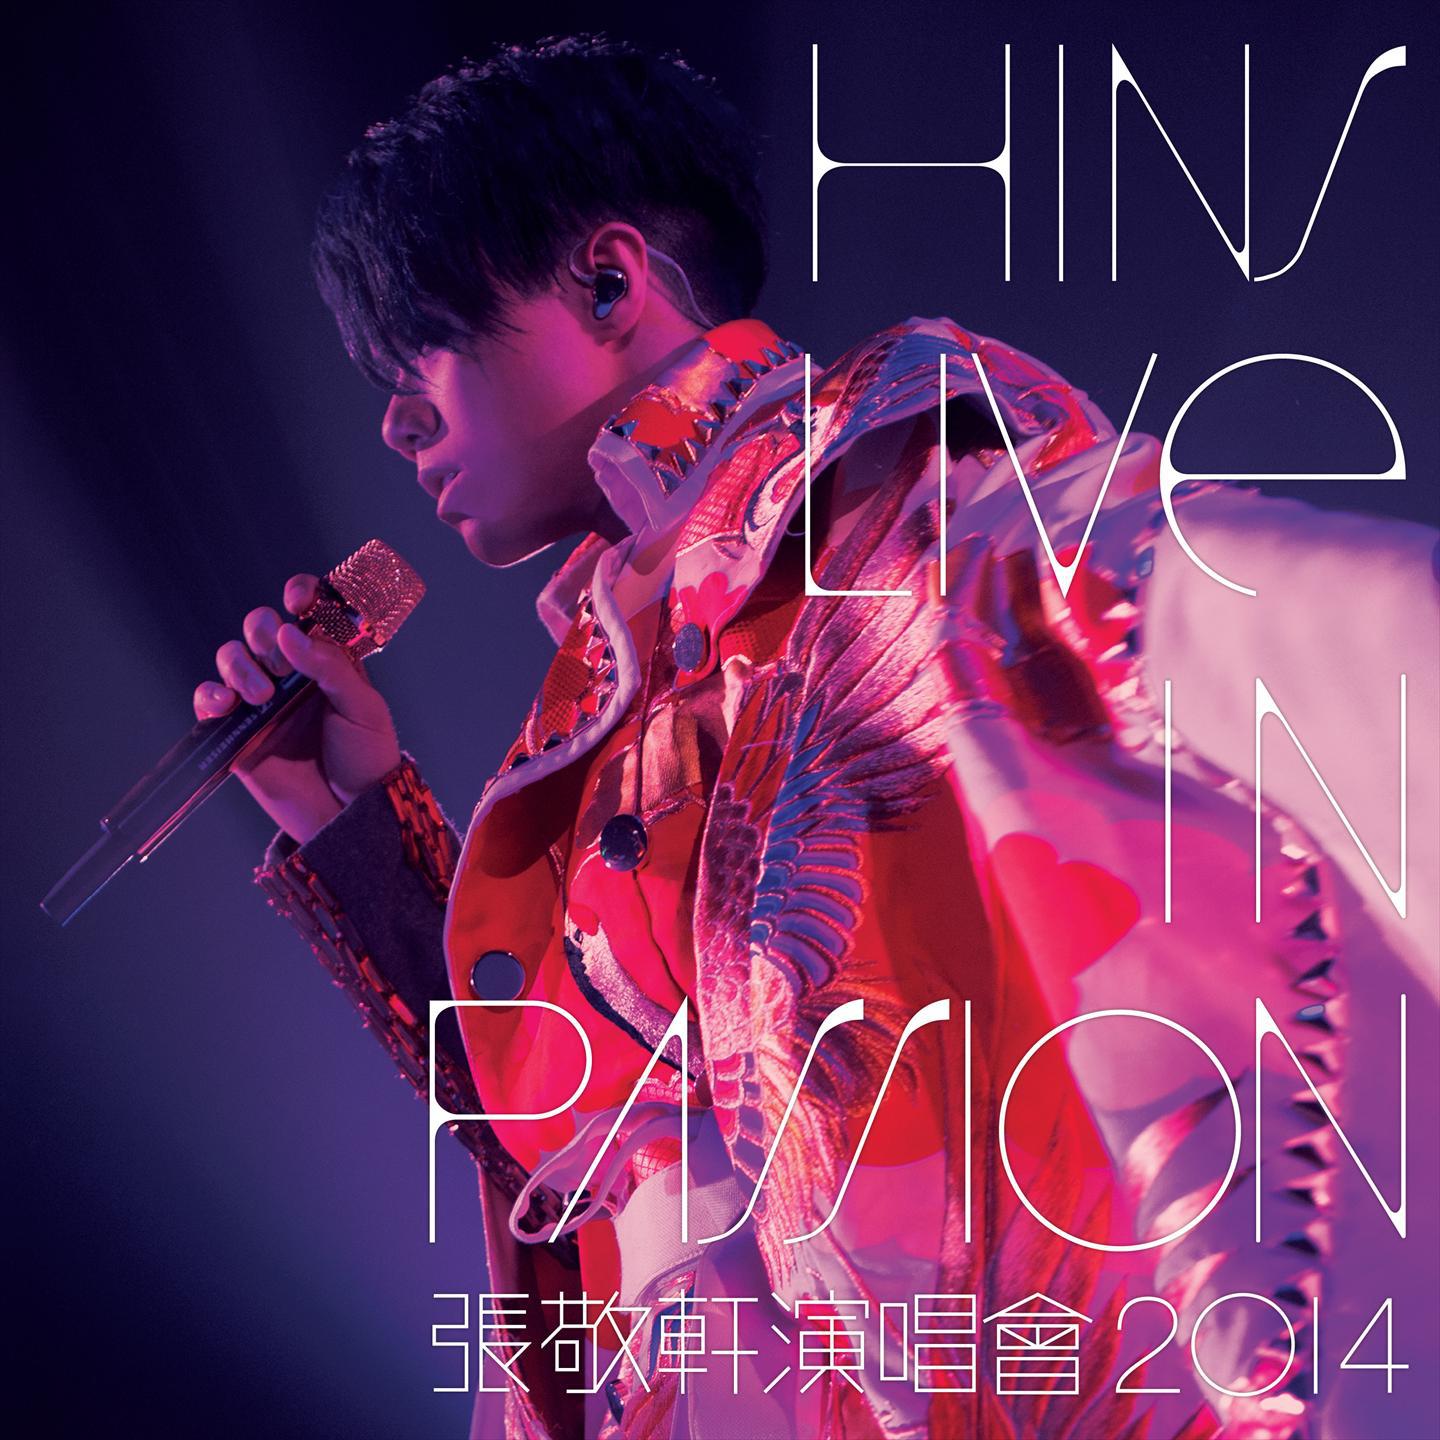 我的天 (Live)歌词 歌手张敬轩-专辑Hins Live in Passion 张敬轩演唱会 2014-单曲《我的天 (Live)》LRC歌词下载